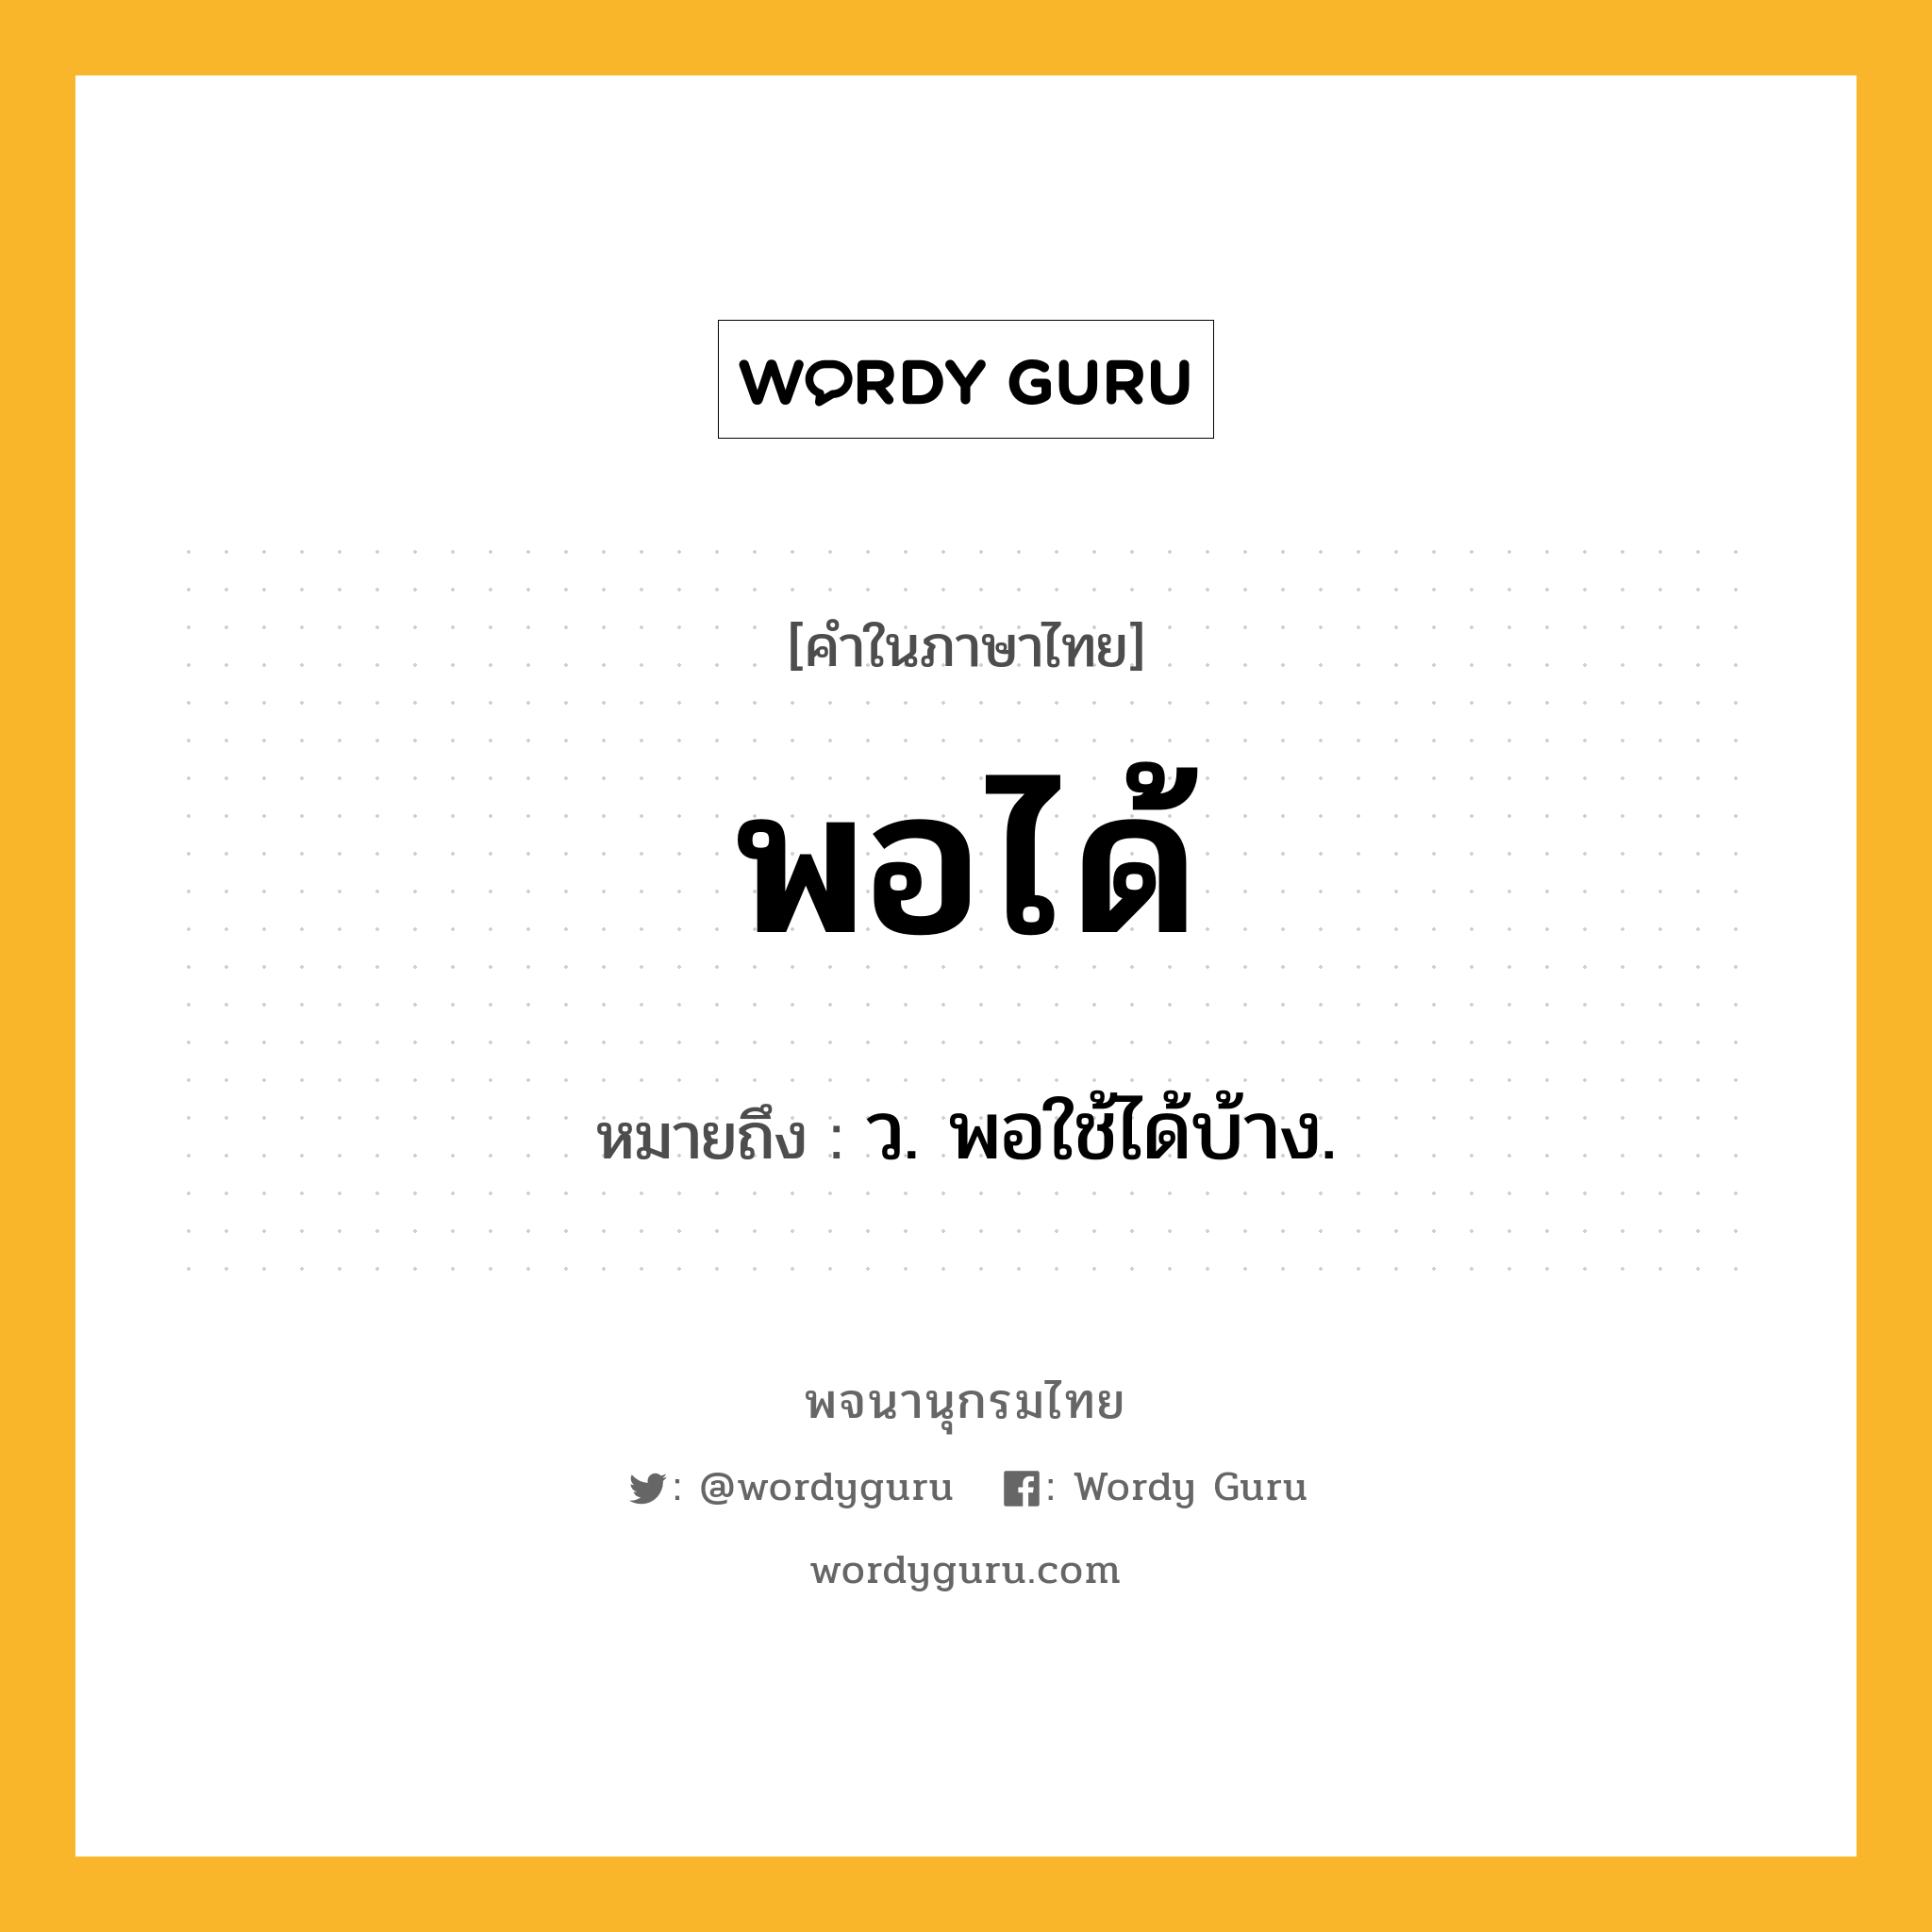 พอได้ ความหมาย หมายถึงอะไร?, คำในภาษาไทย พอได้ หมายถึง ว. พอใช้ได้บ้าง.